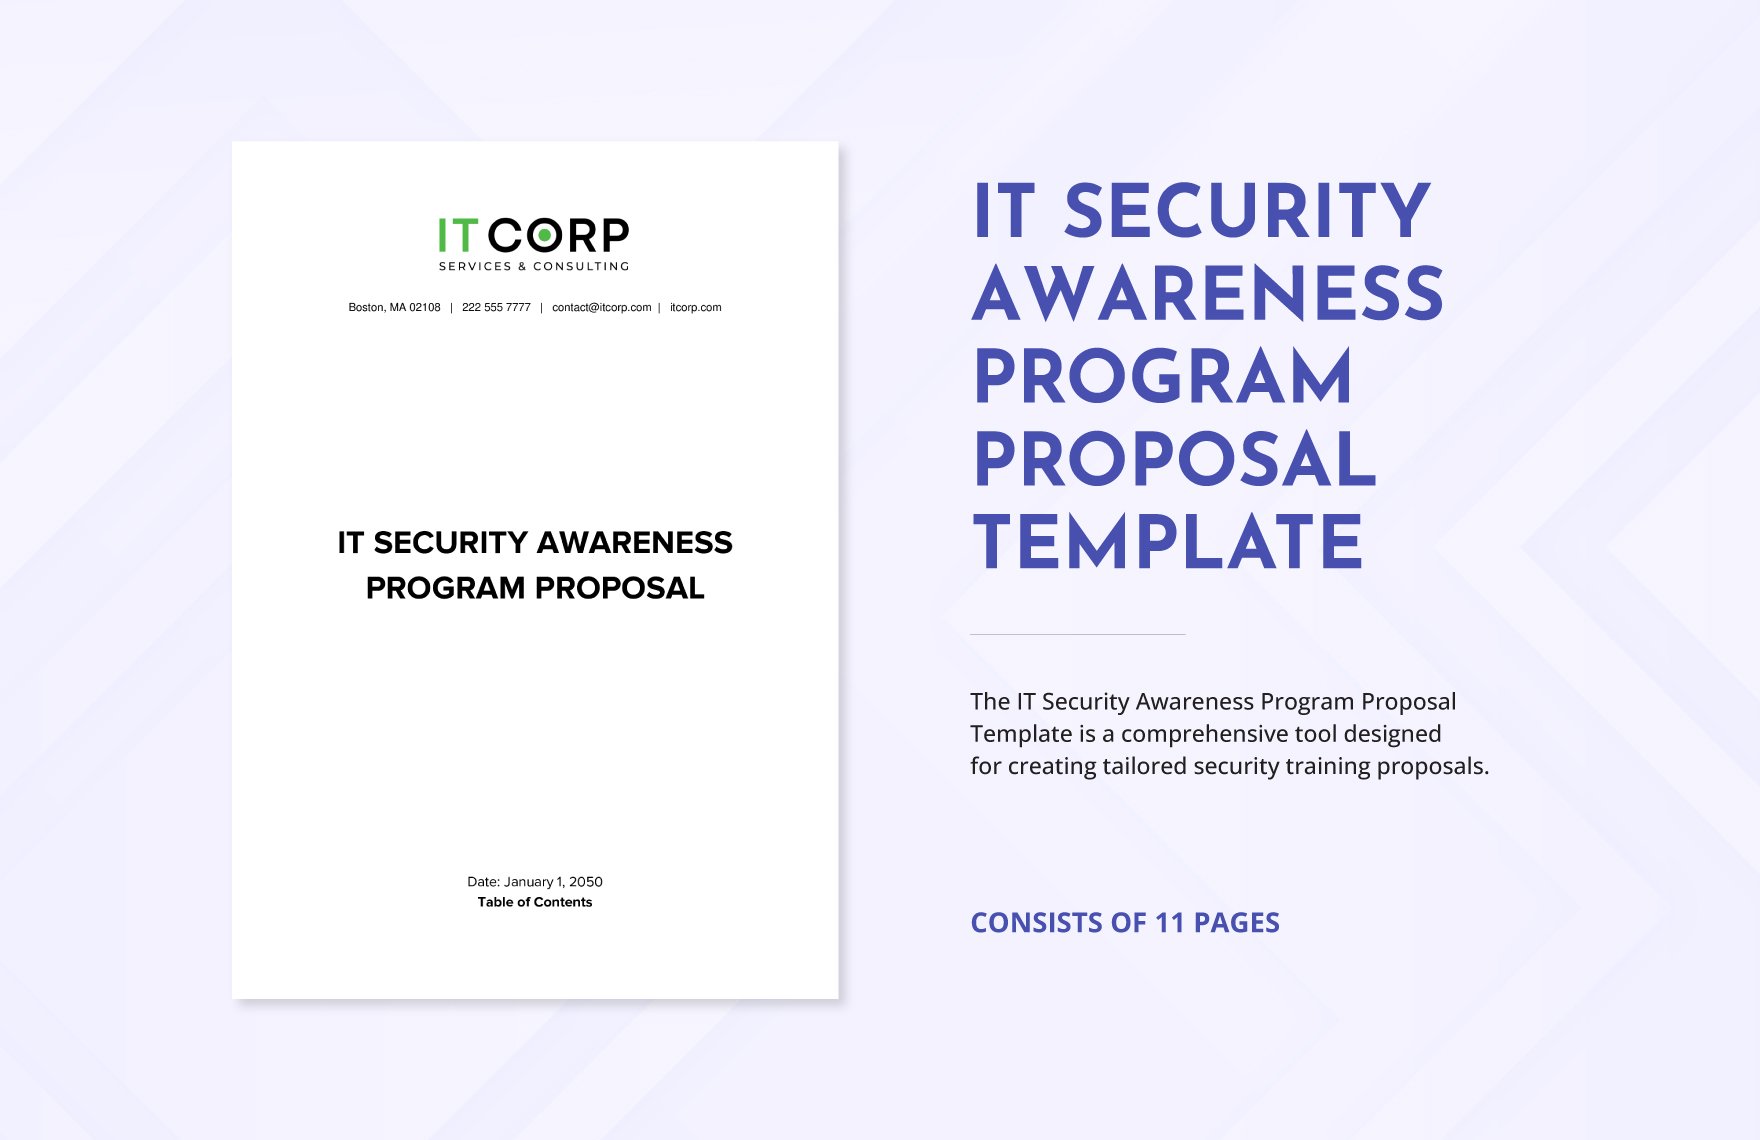 IT Security Awareness Program Proposal Template